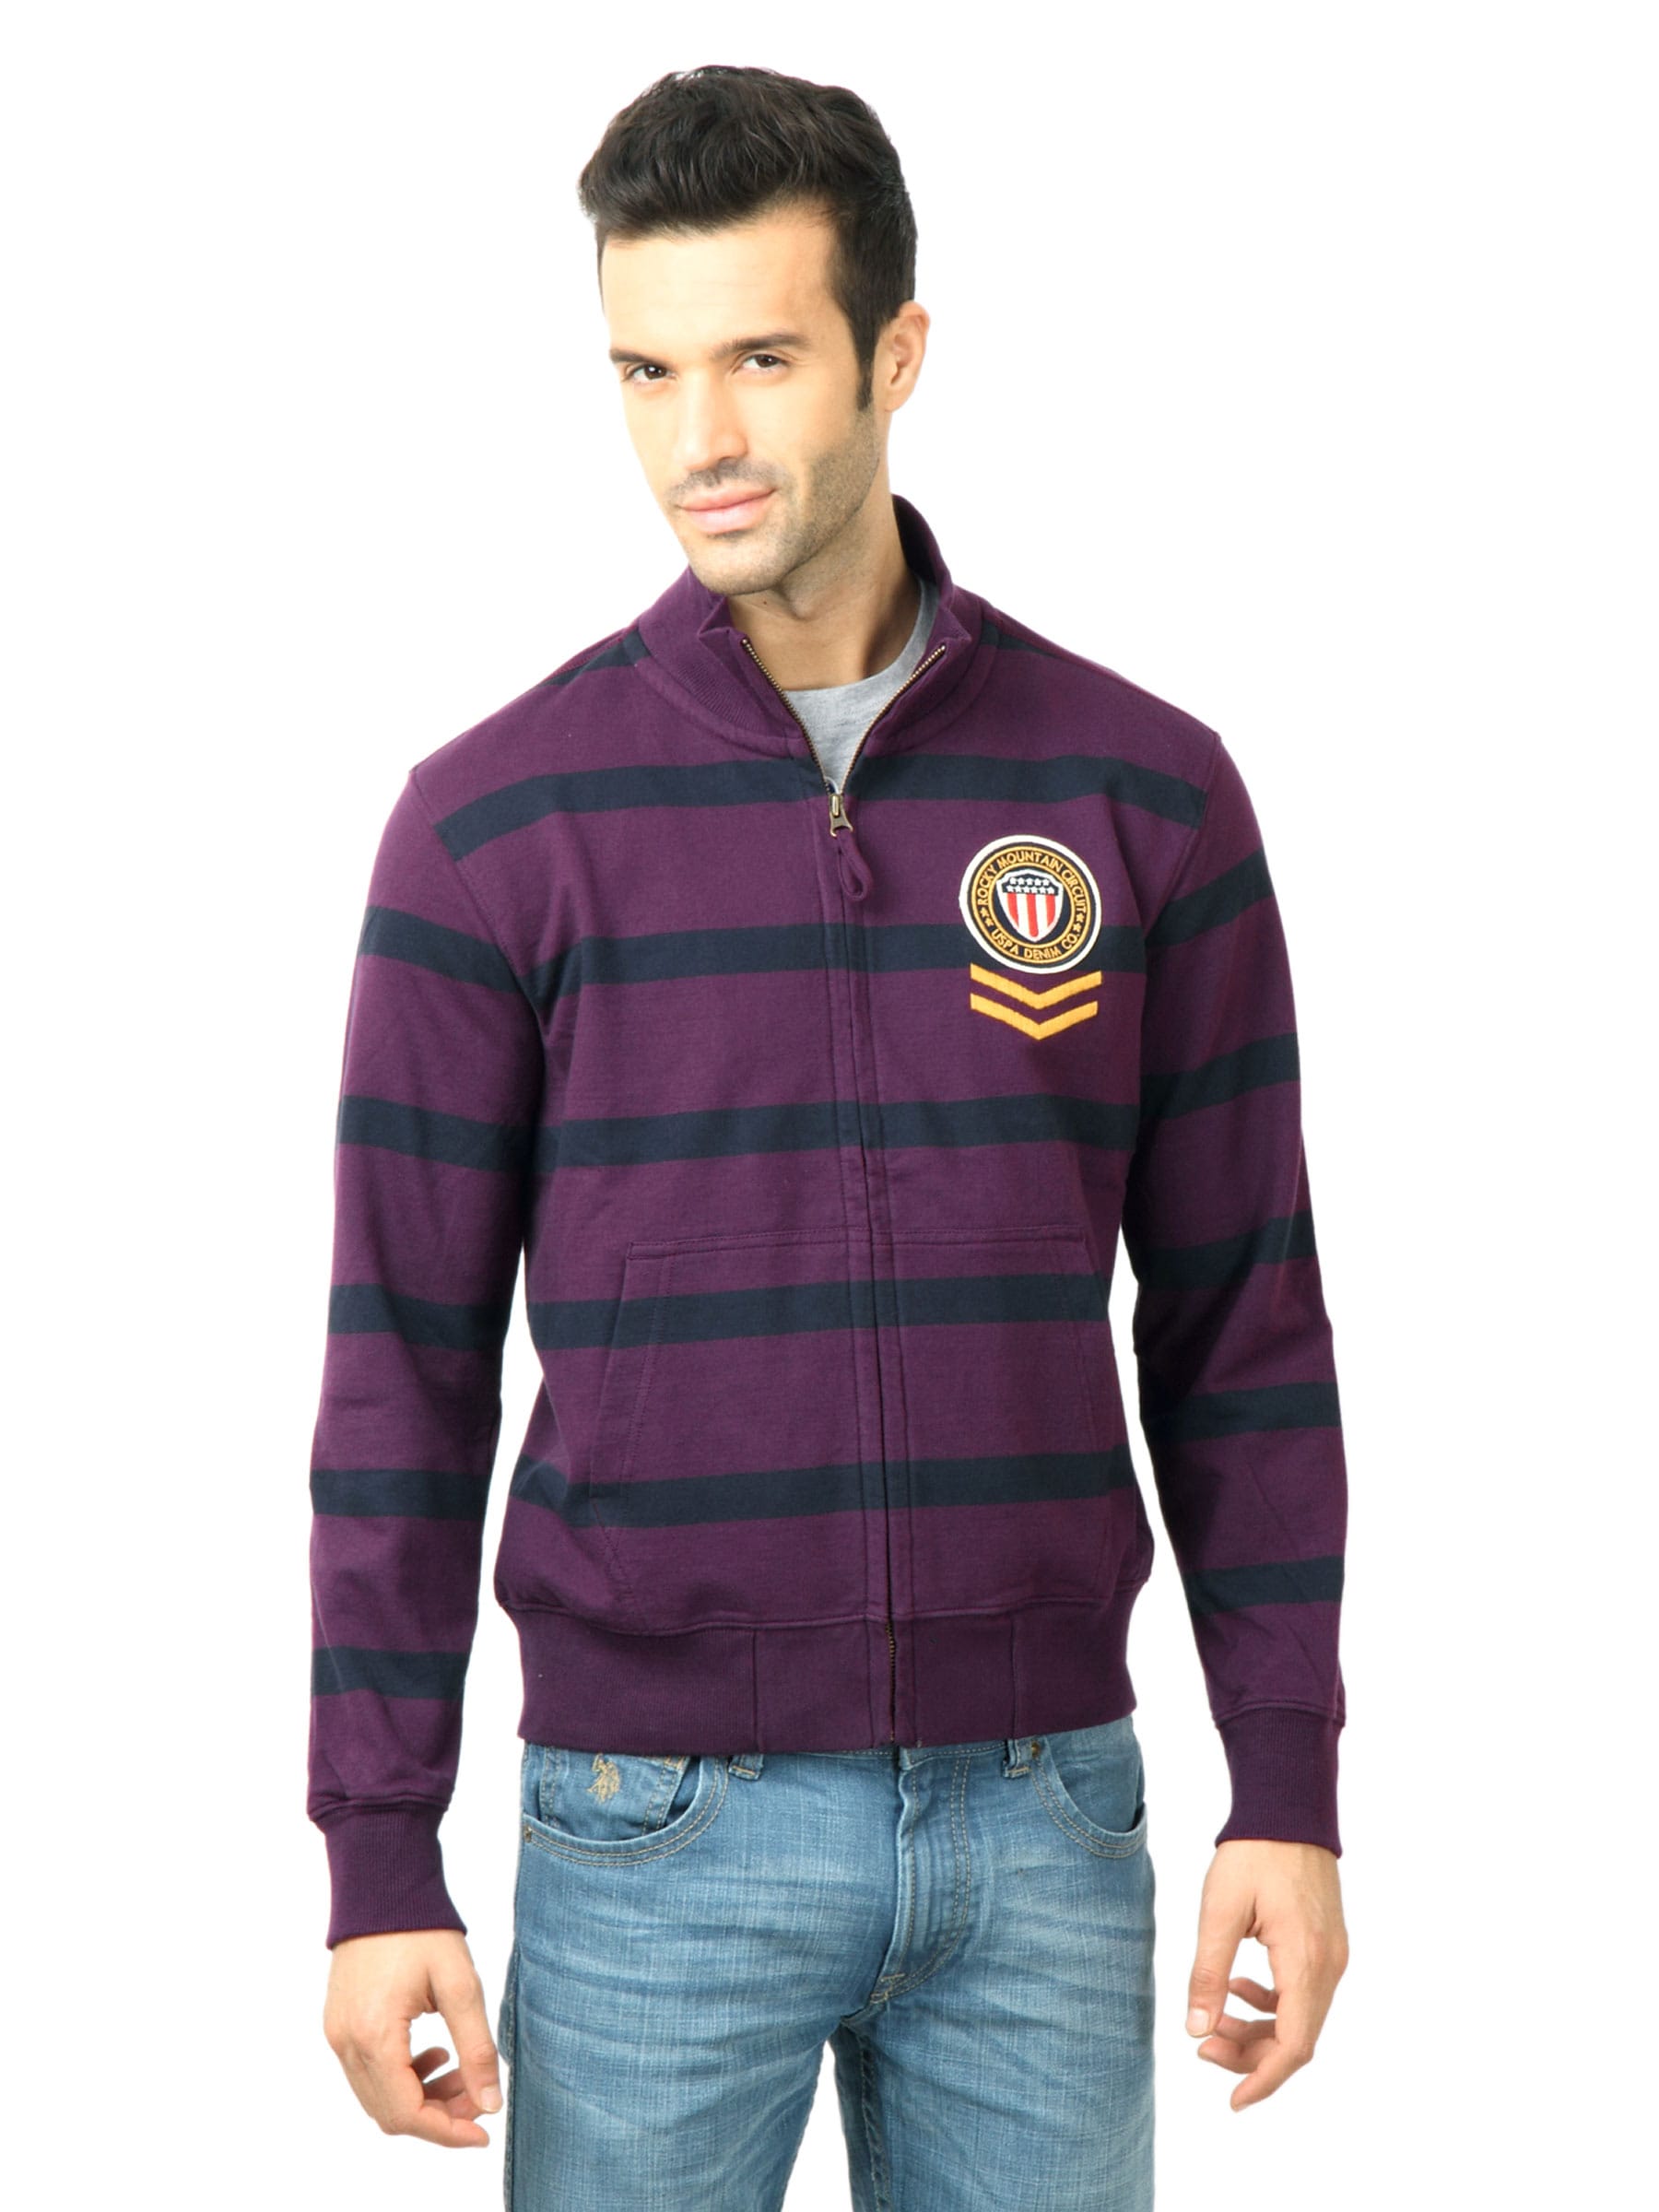 U.S. Polo Assn. Men Stripes Purple Sweatshirt